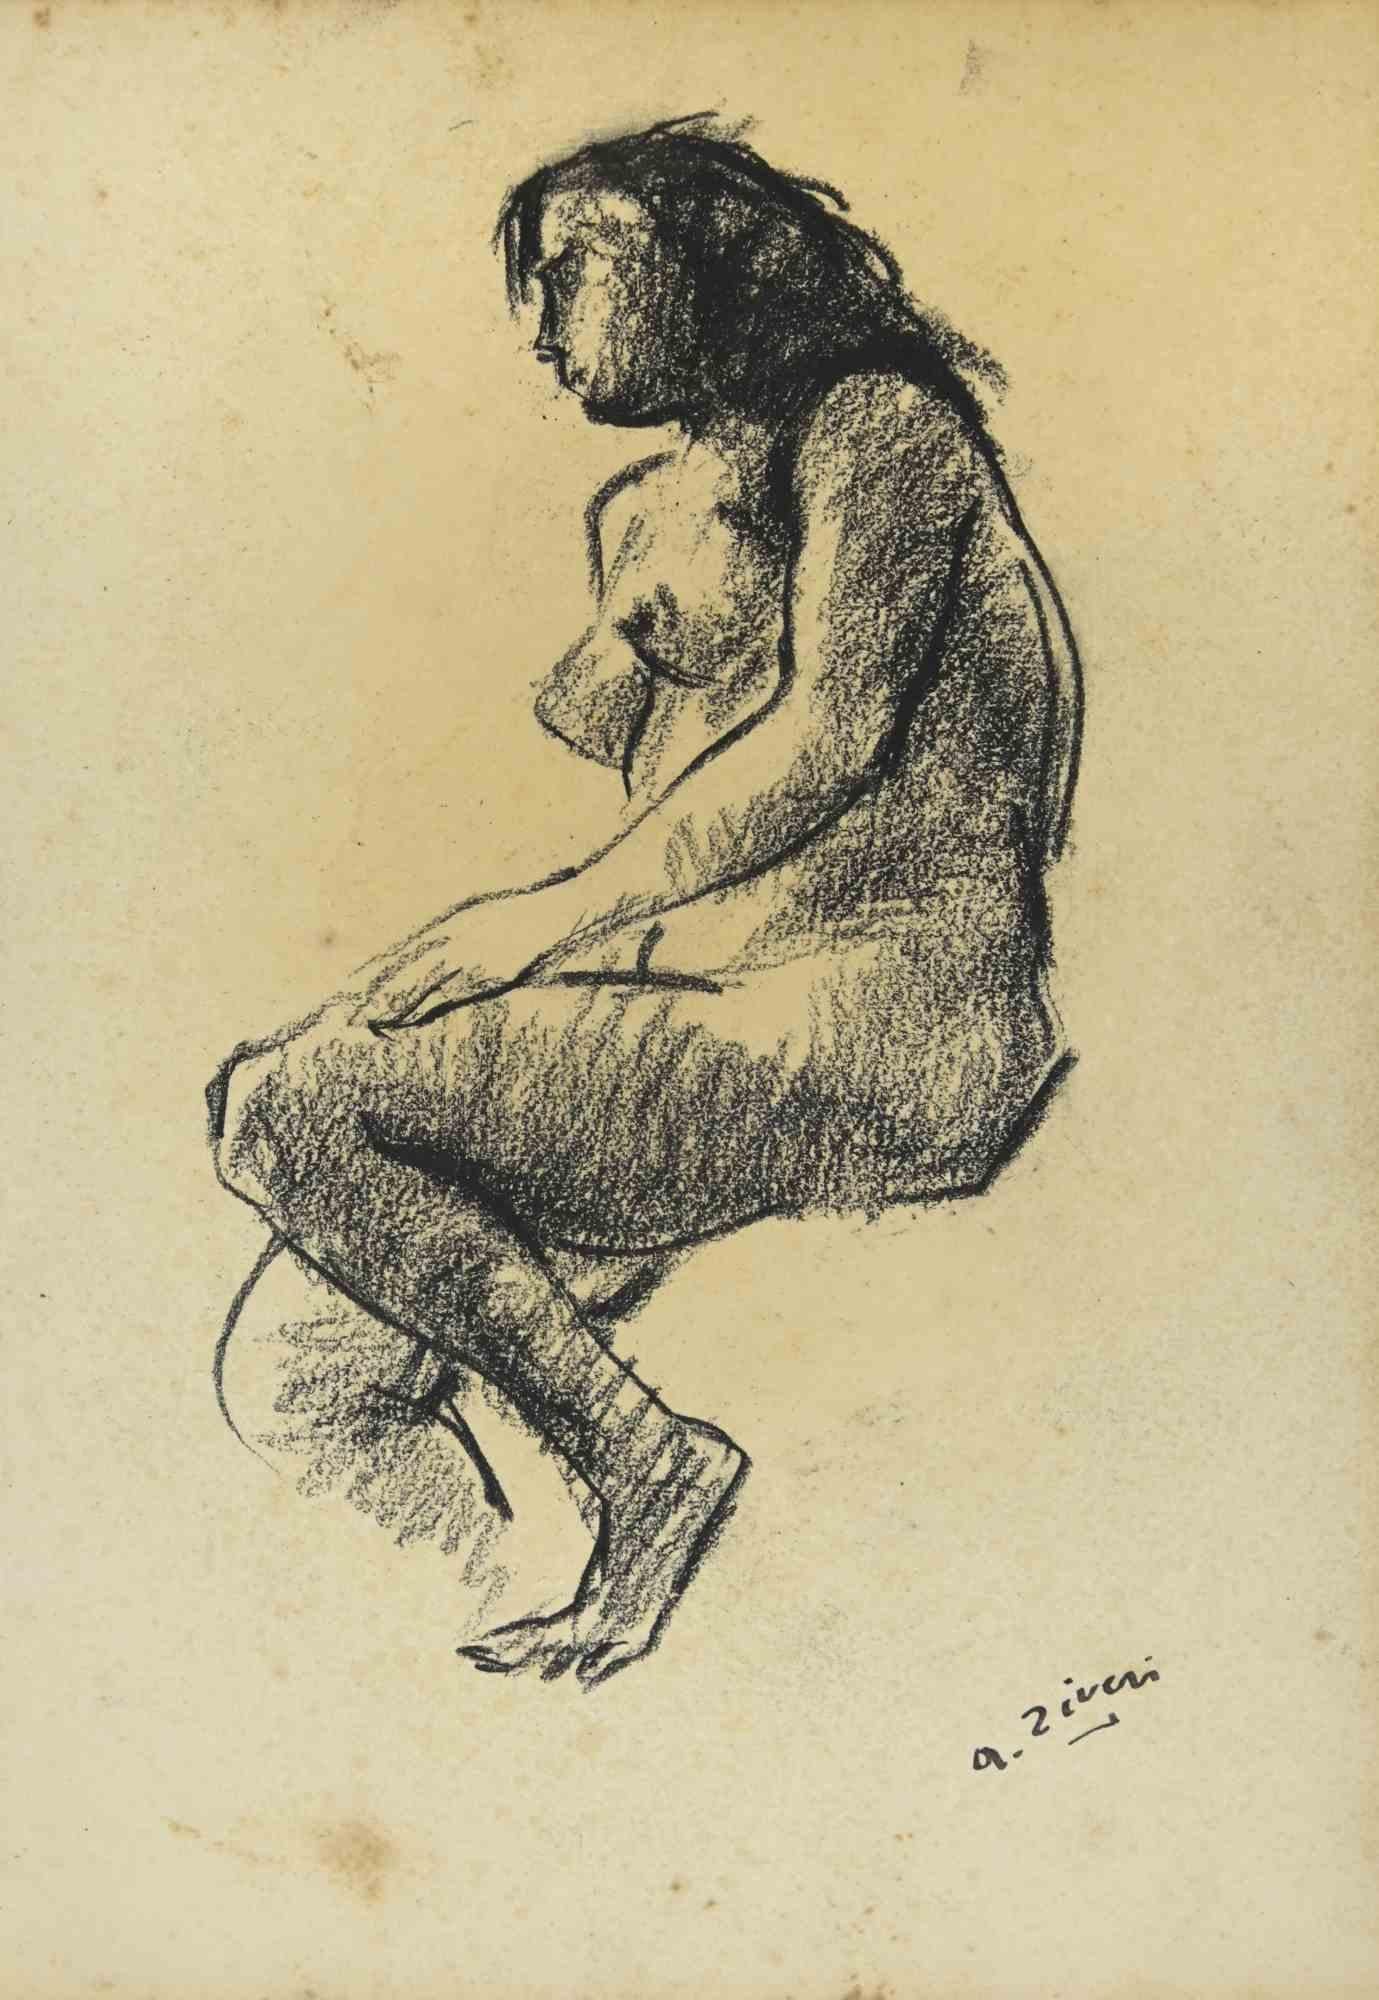 Nude ist eine Originalzeichnung von Alberto Ziveri aus den 1930er Jahren.

Zeichenkohle auf Papier.

Handsigniert und datiert.

In gutem Zustand mit leichten Stockflecken.

Das Kunstwerk wird durch geschickte Striche meisterhaft